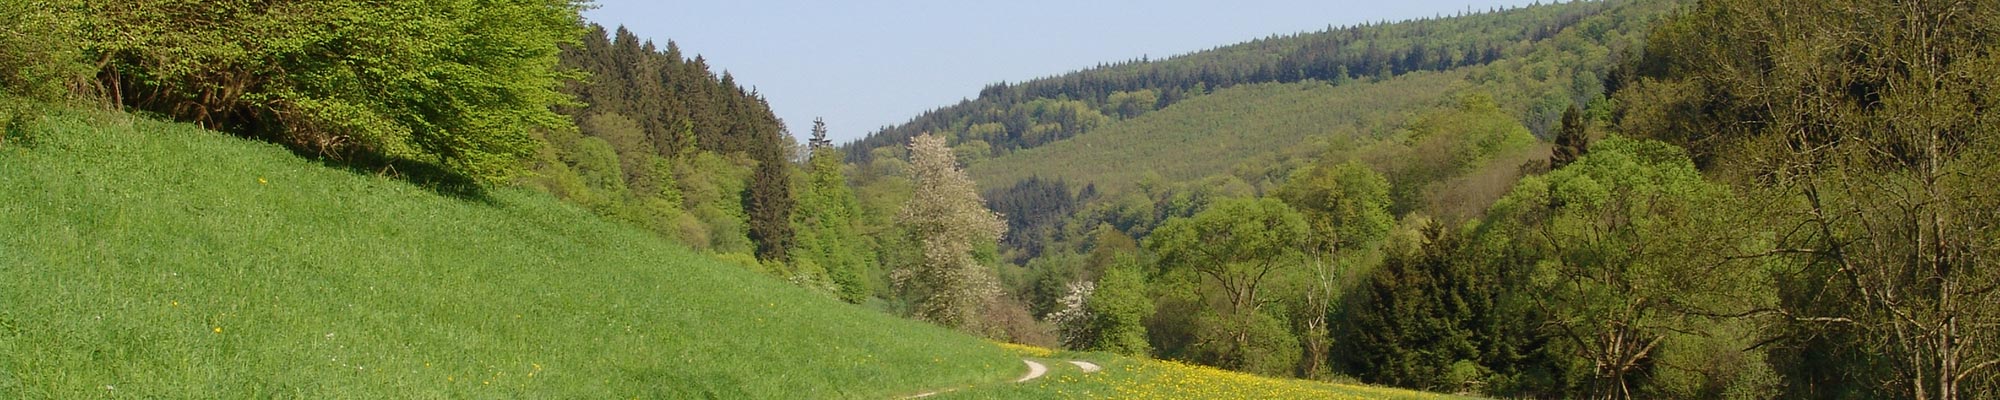 Lebensraum Wald - Biodiversitätspfad Buchen